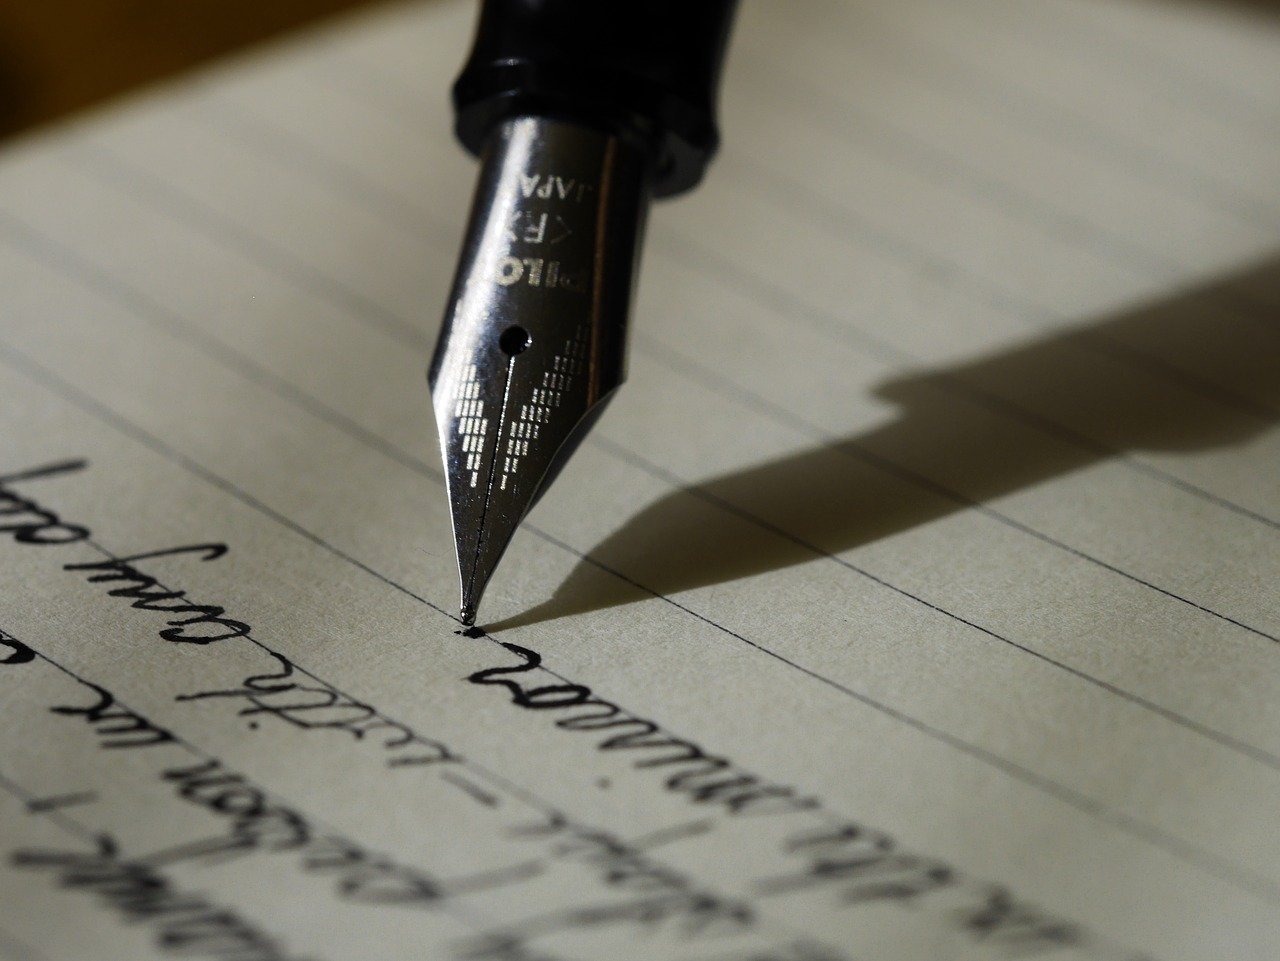 scrisoare si un stilou cu peniță cu cerneala neagra